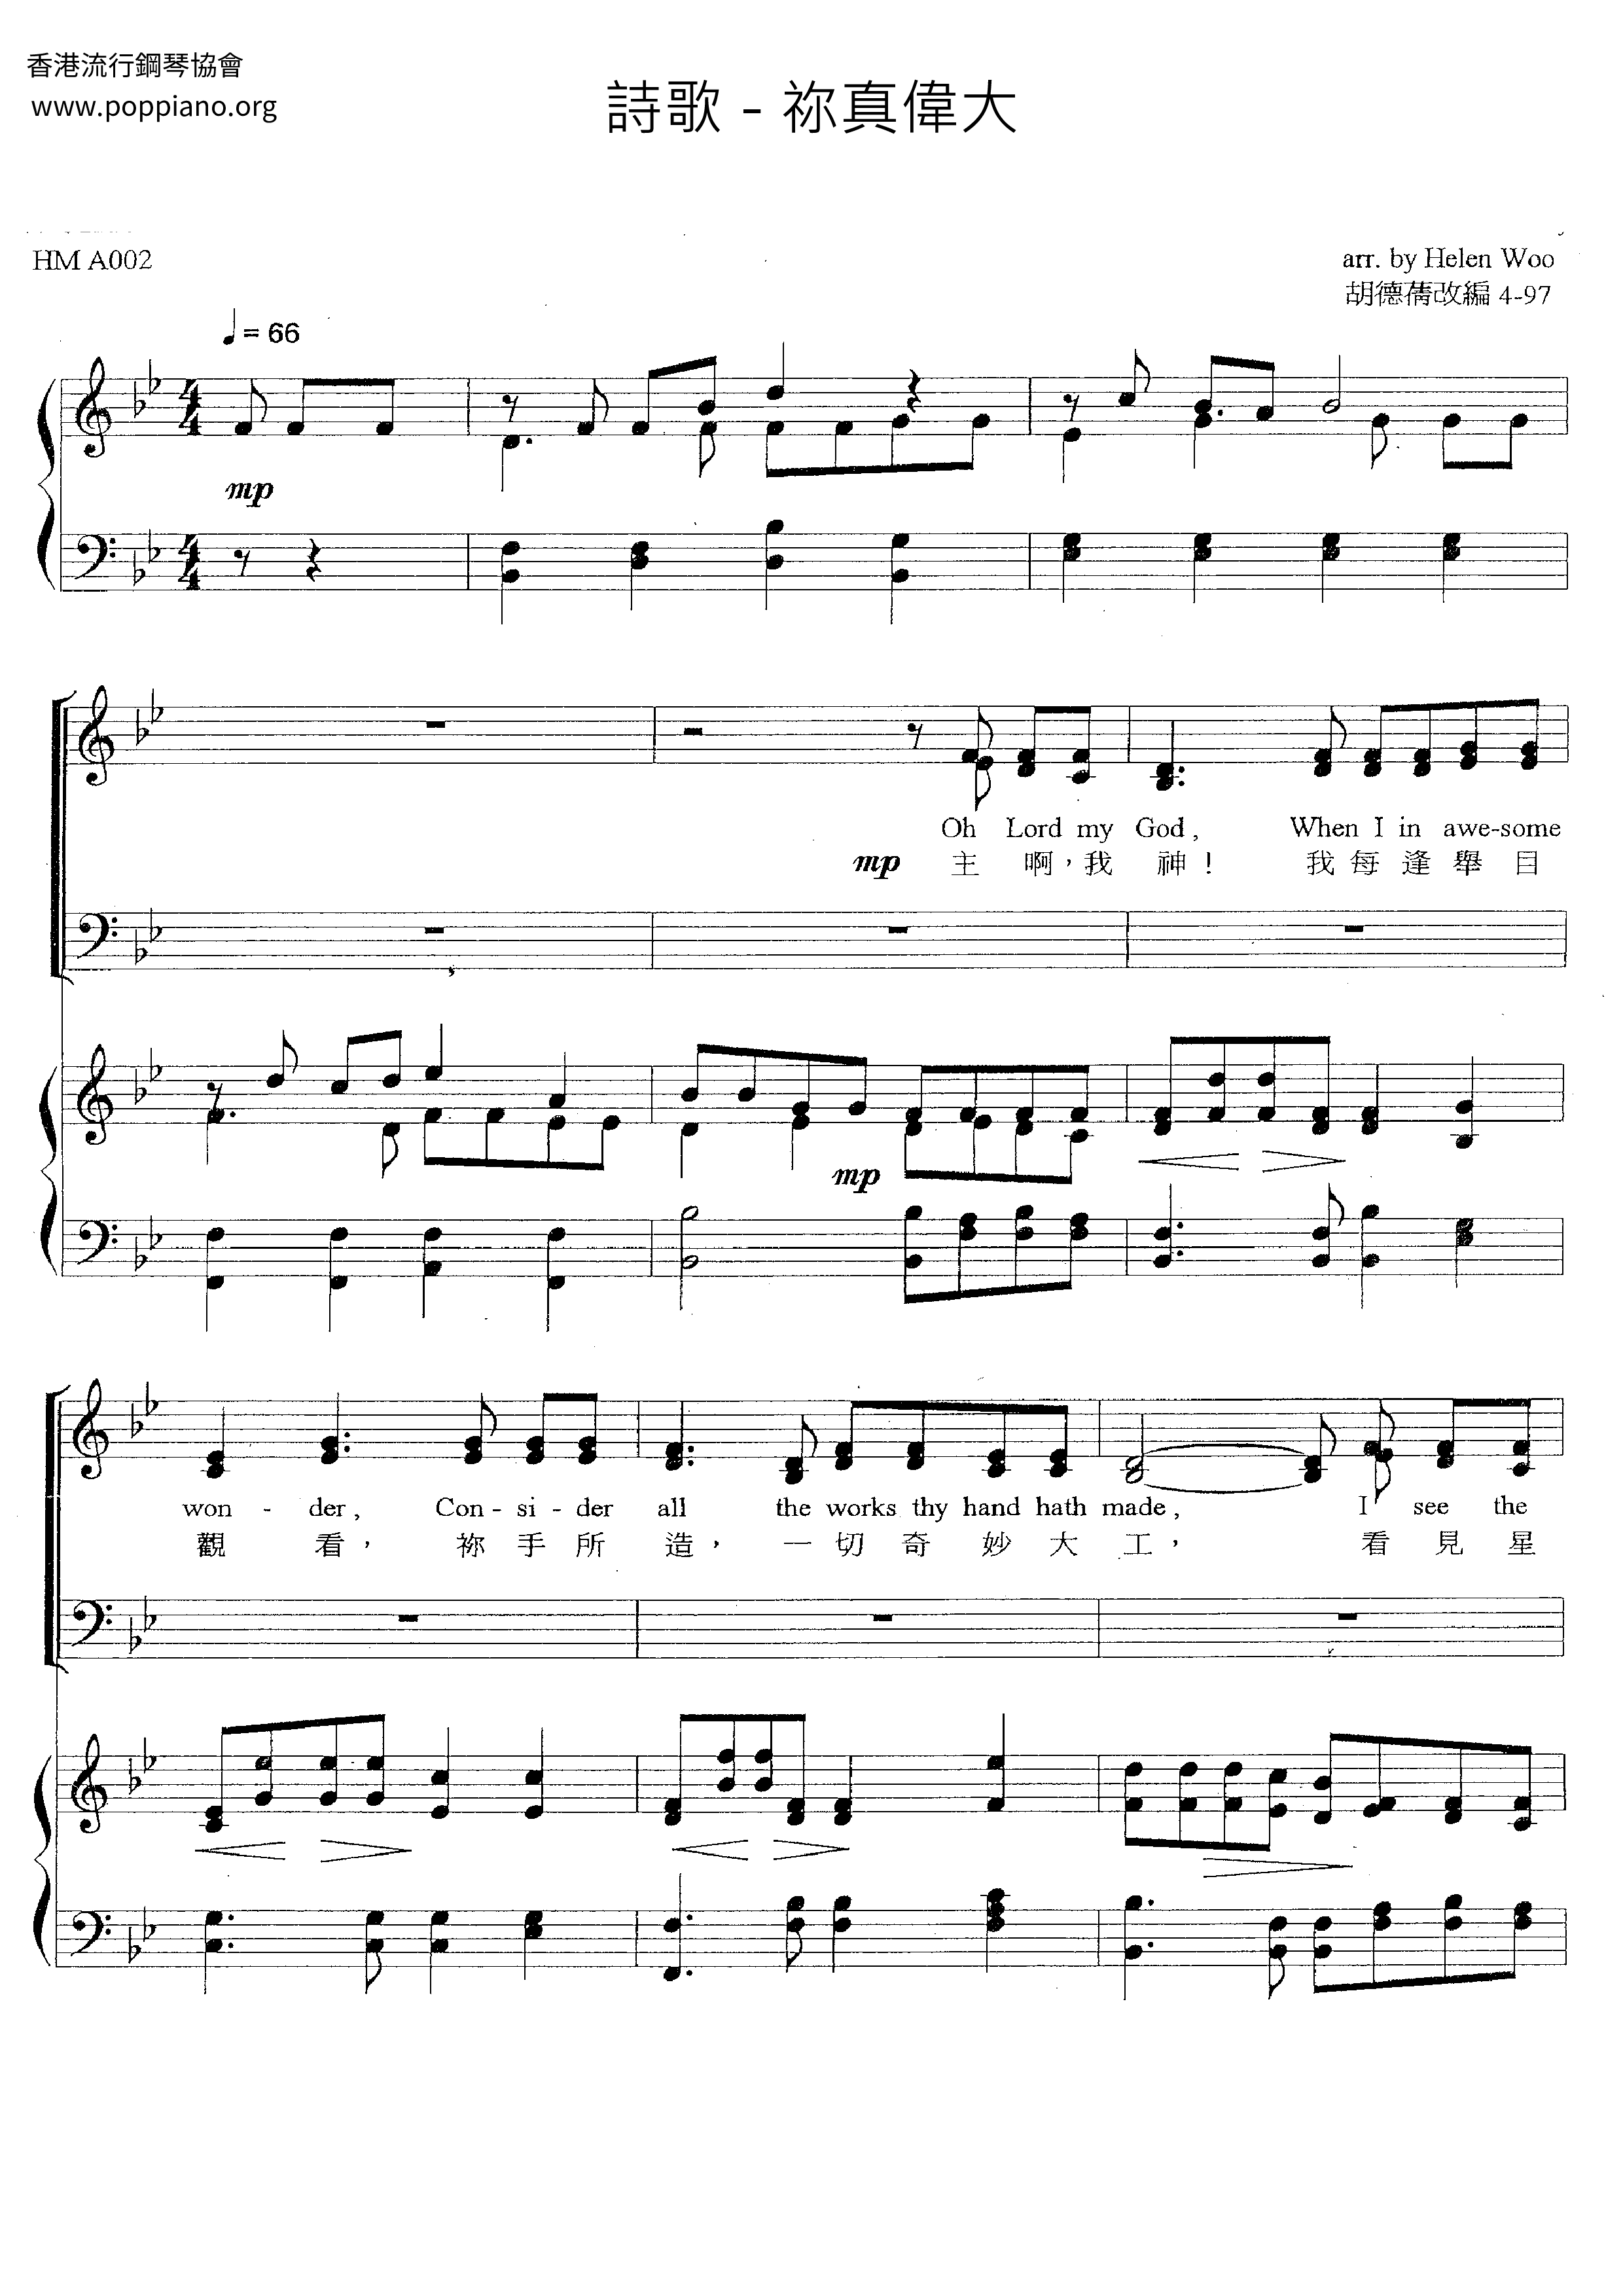 HymnHow Great Thou Art Sheet Music pdf, Free Score